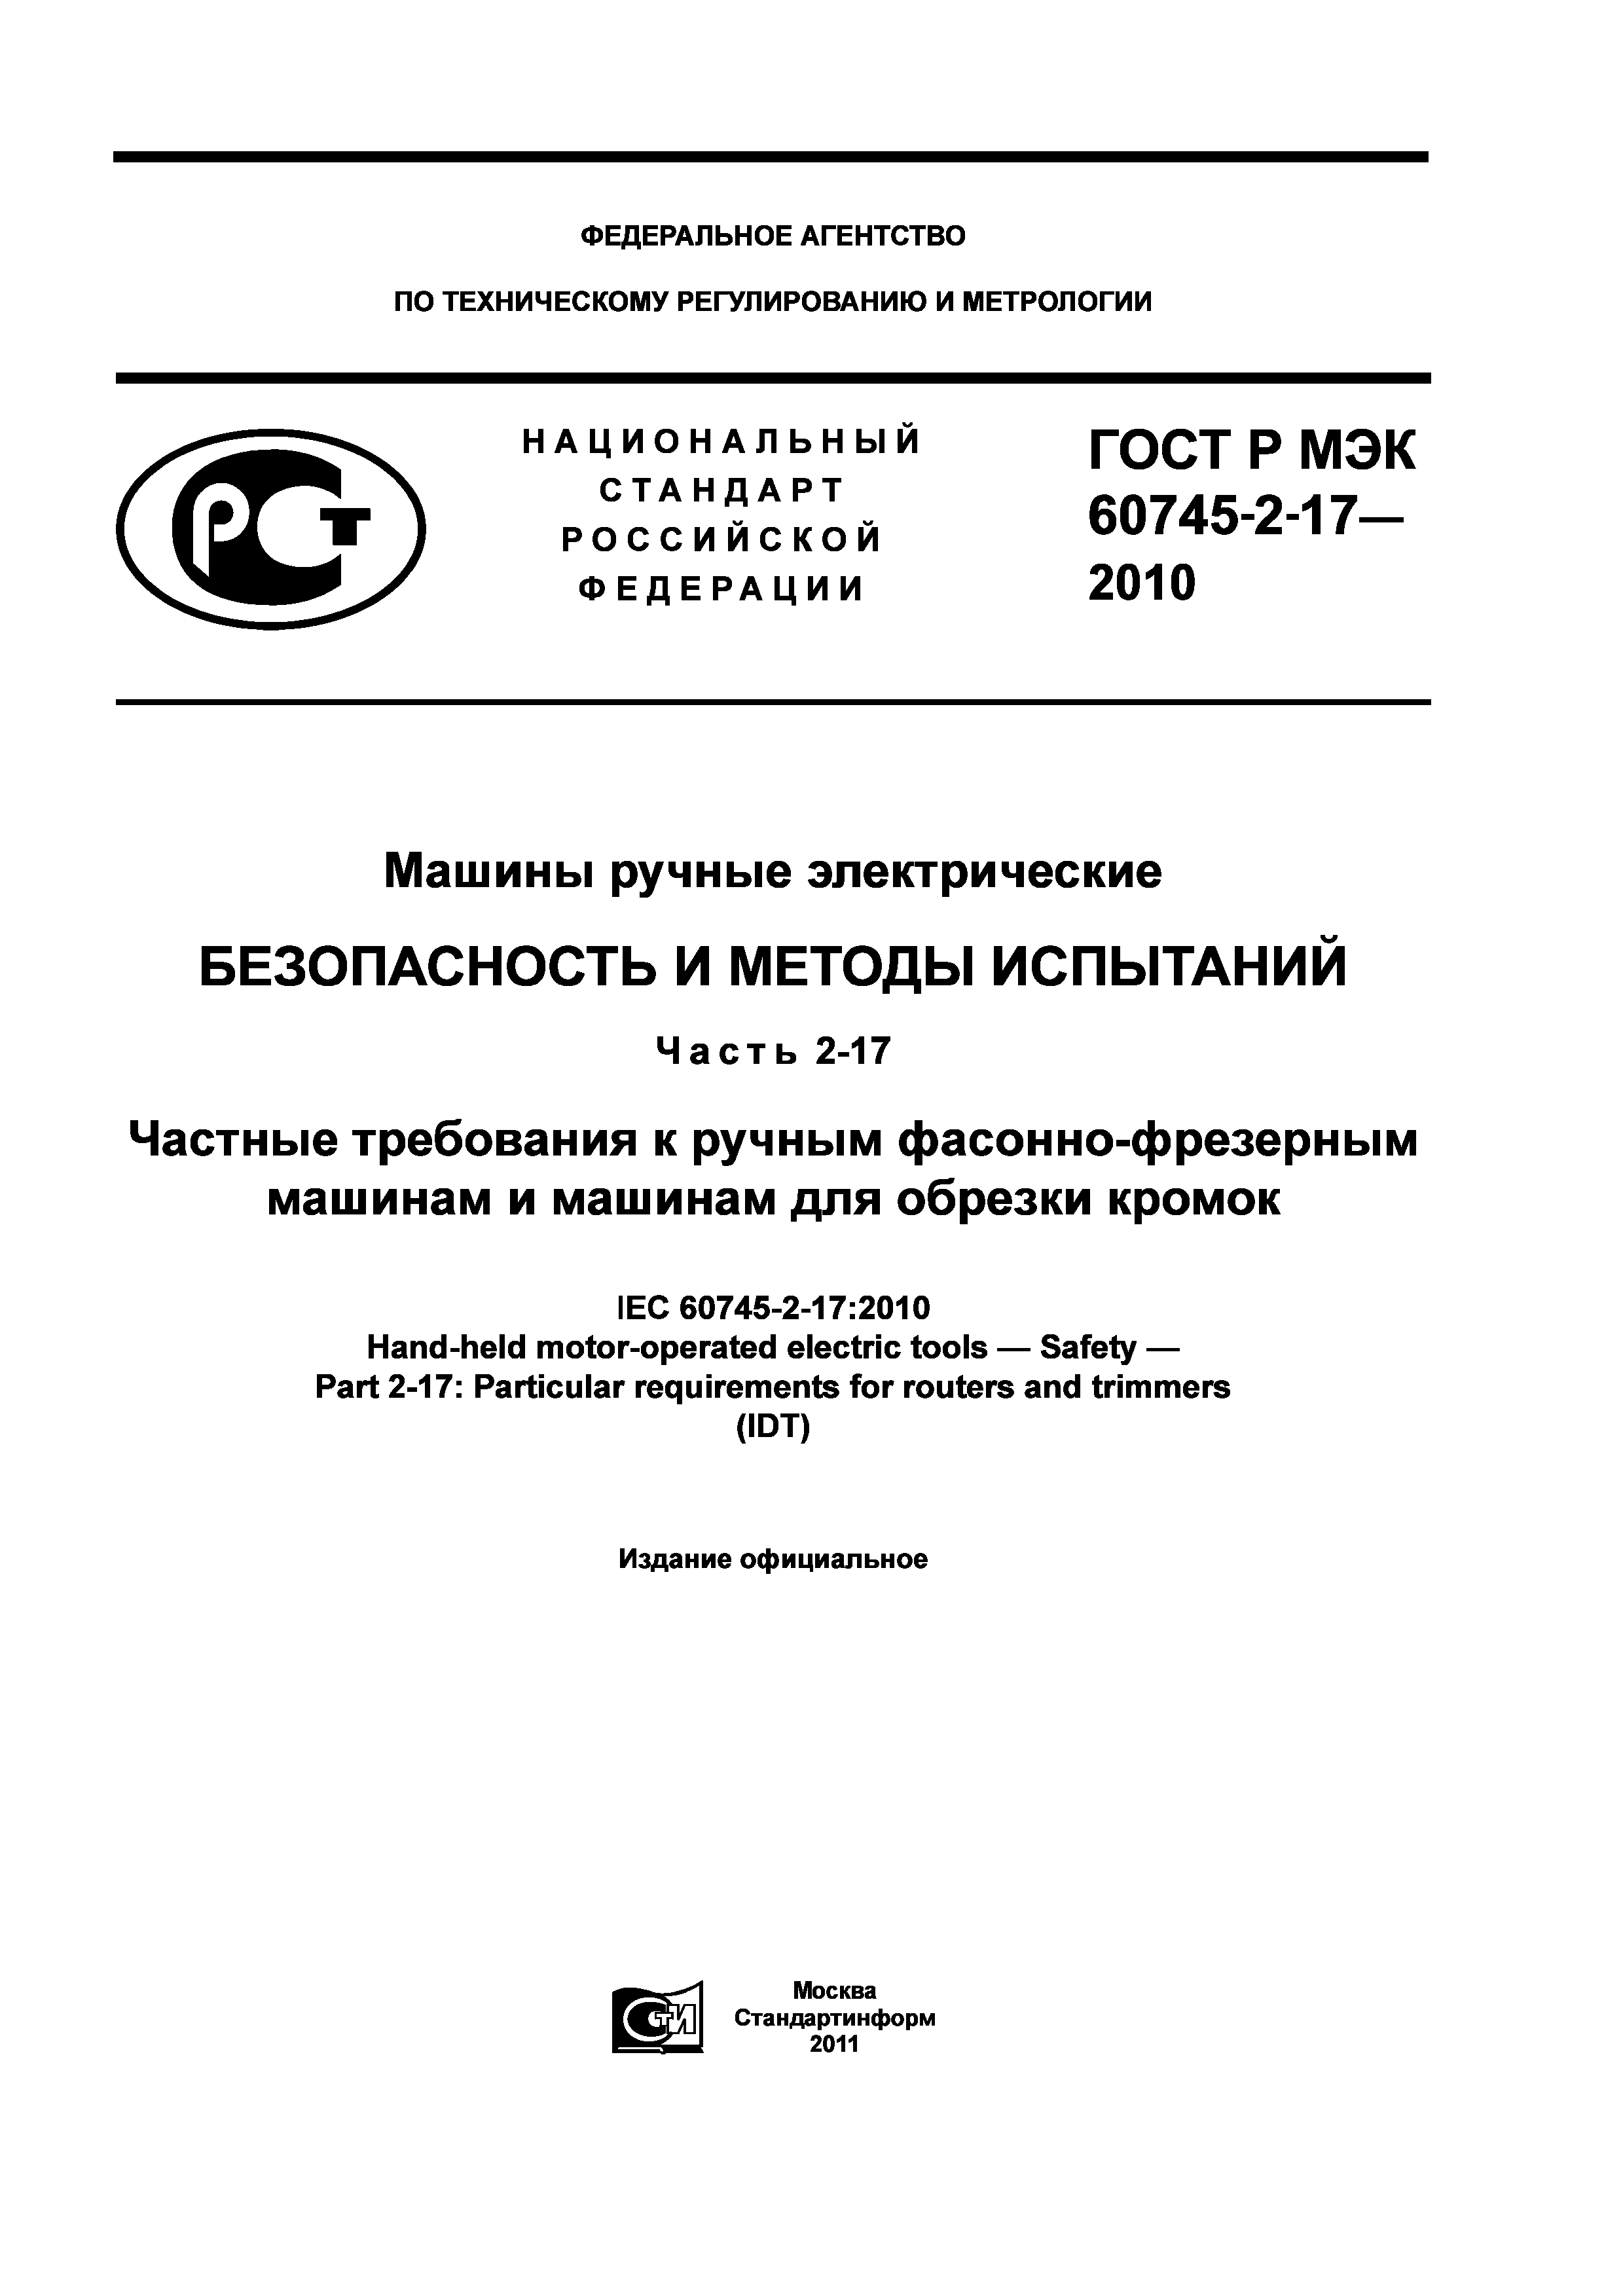 ГОСТ Р МЭК 60745-2-17-2010